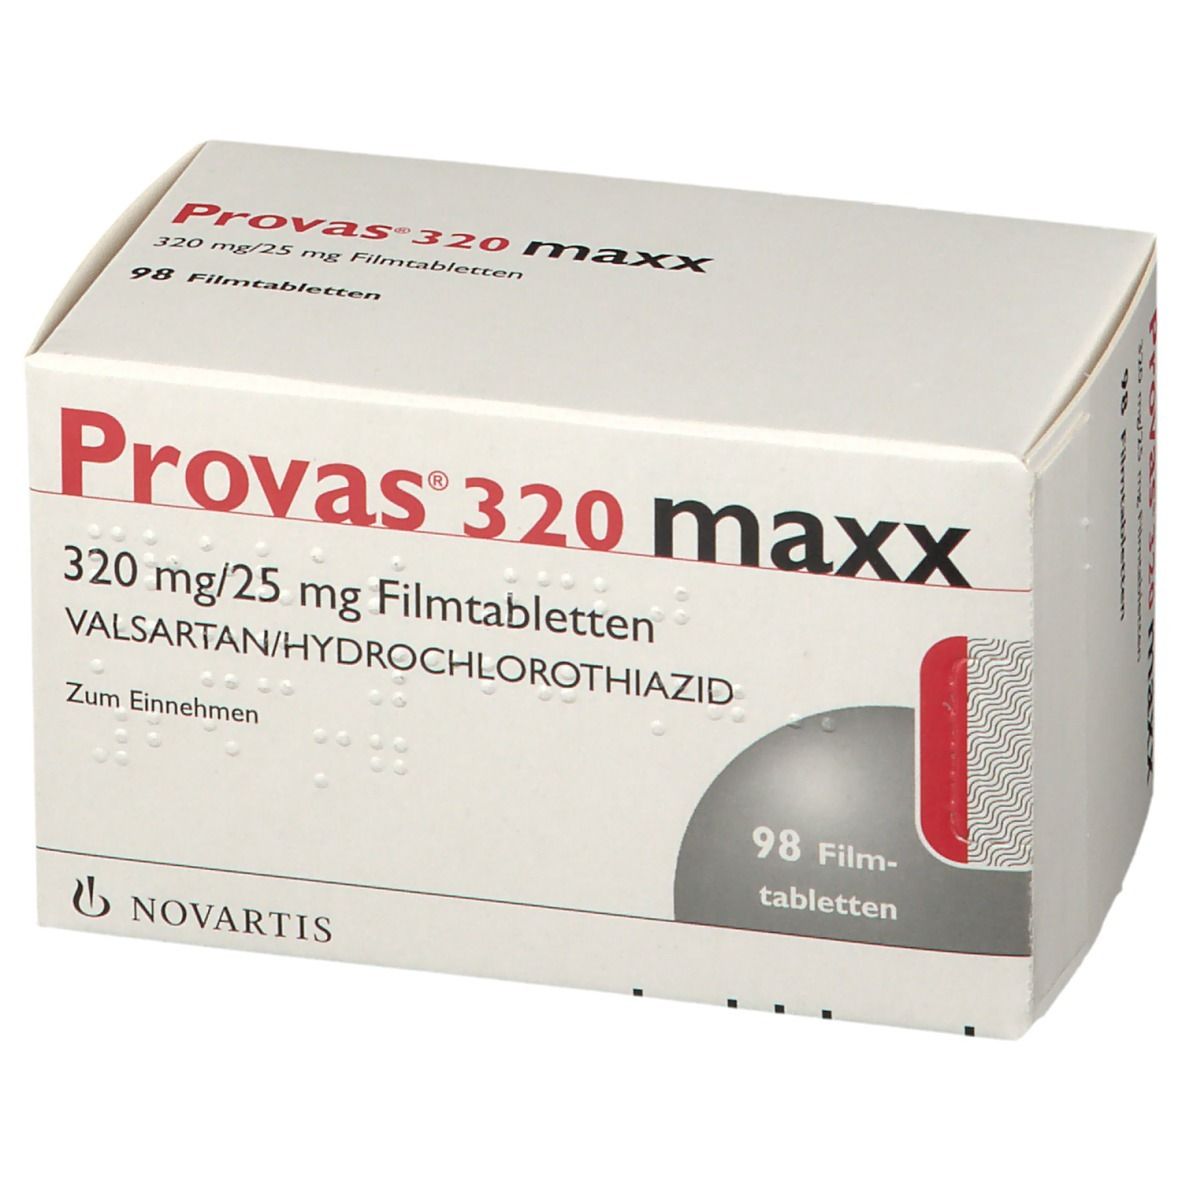 Provas® 320 maxx 320 mg/25 mg